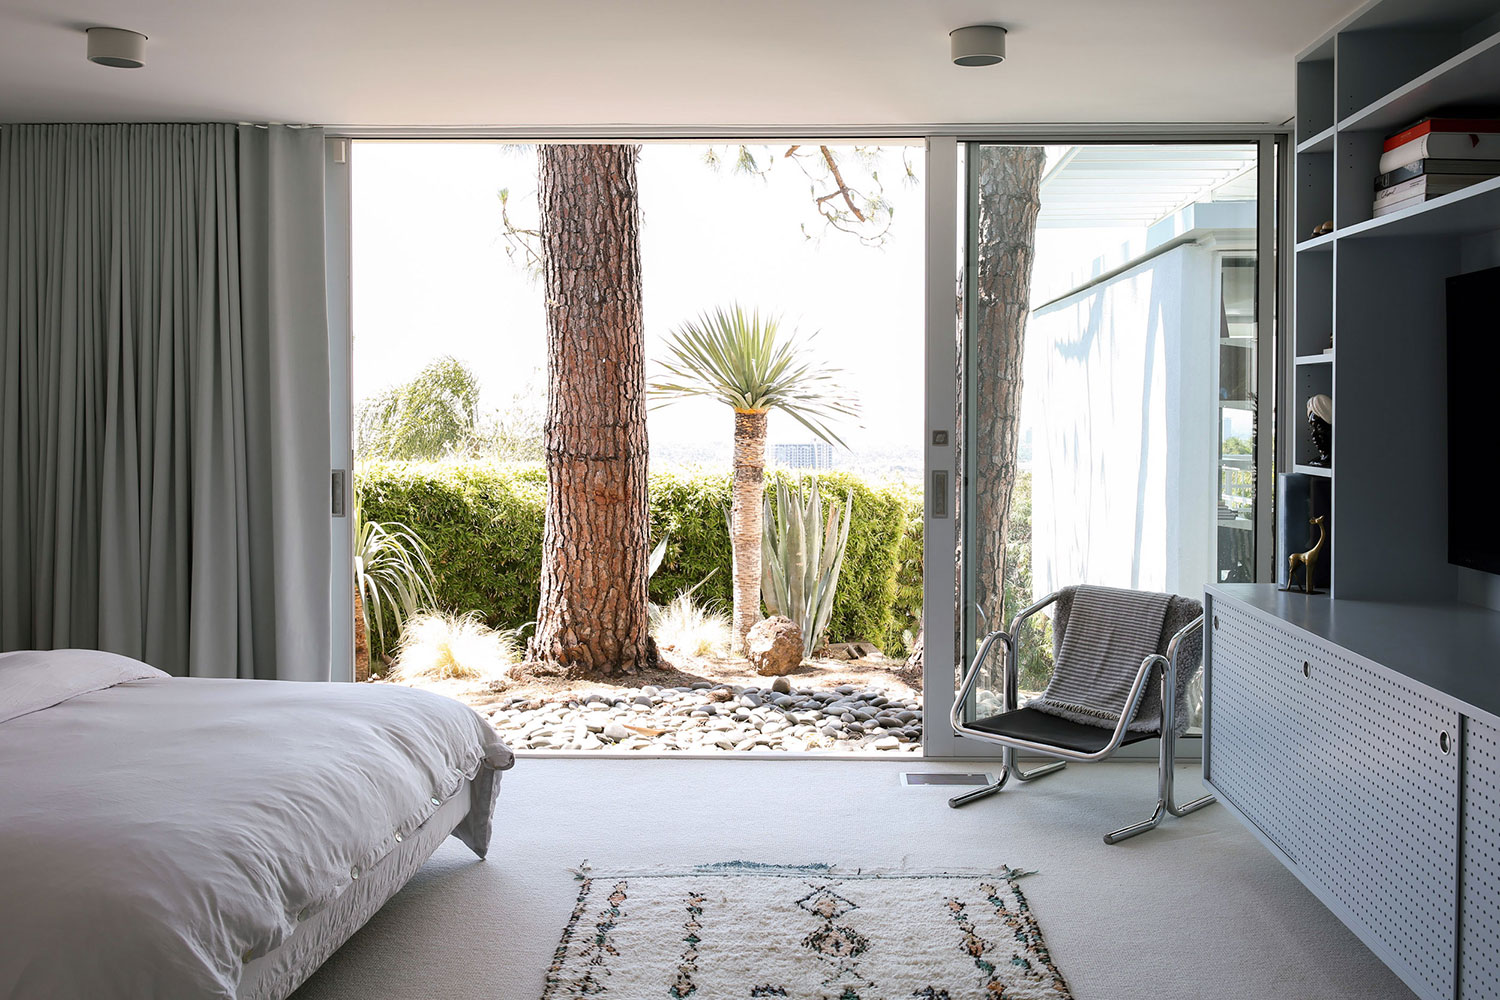 Dormitorio decorado estilo nórdico con muebles de diseño y un ventanal corredero que da a un jardín con piedras y vegetación. Poppyns Magazine